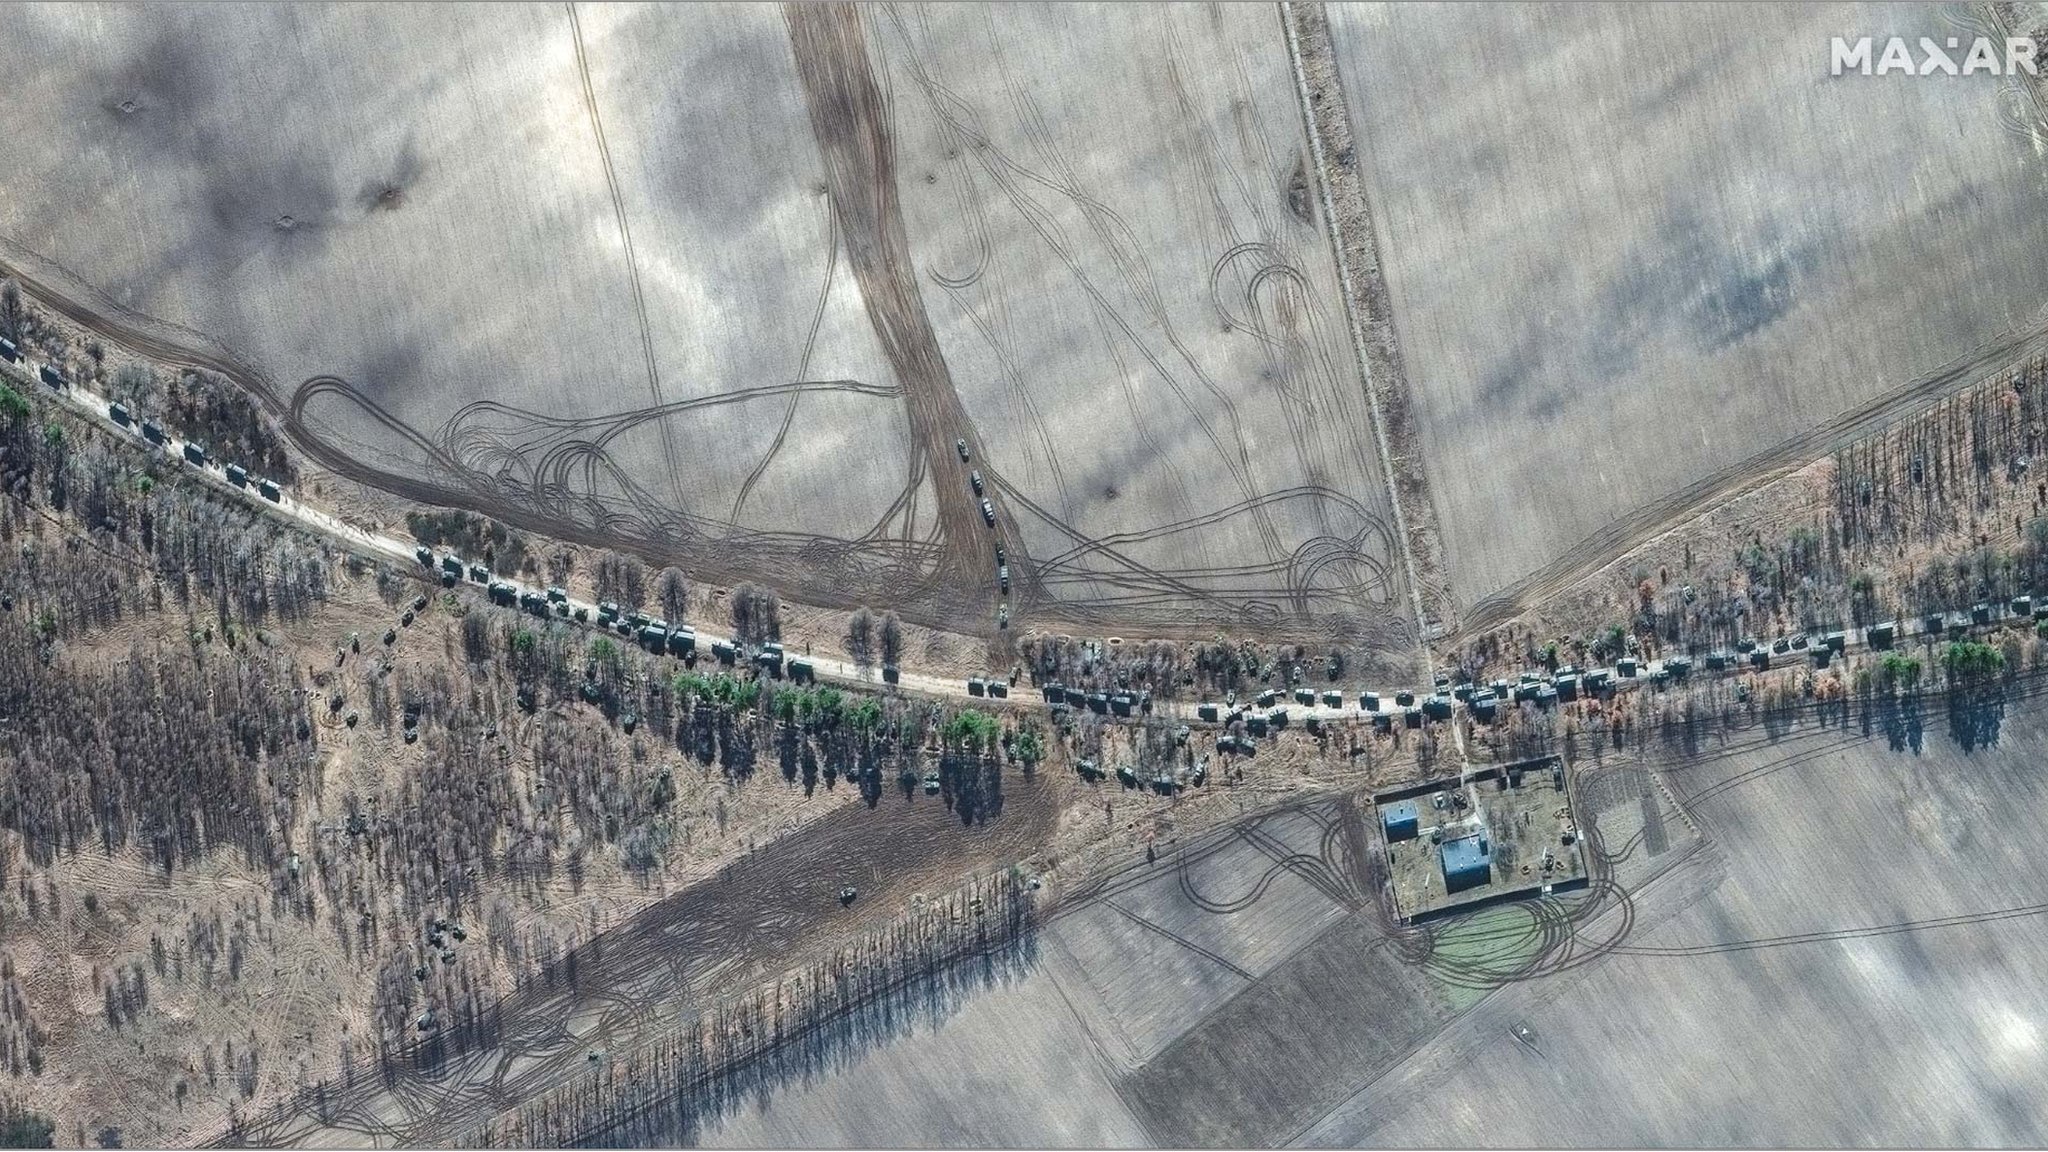 Imagen del convoy tomada por el satélite Maxar